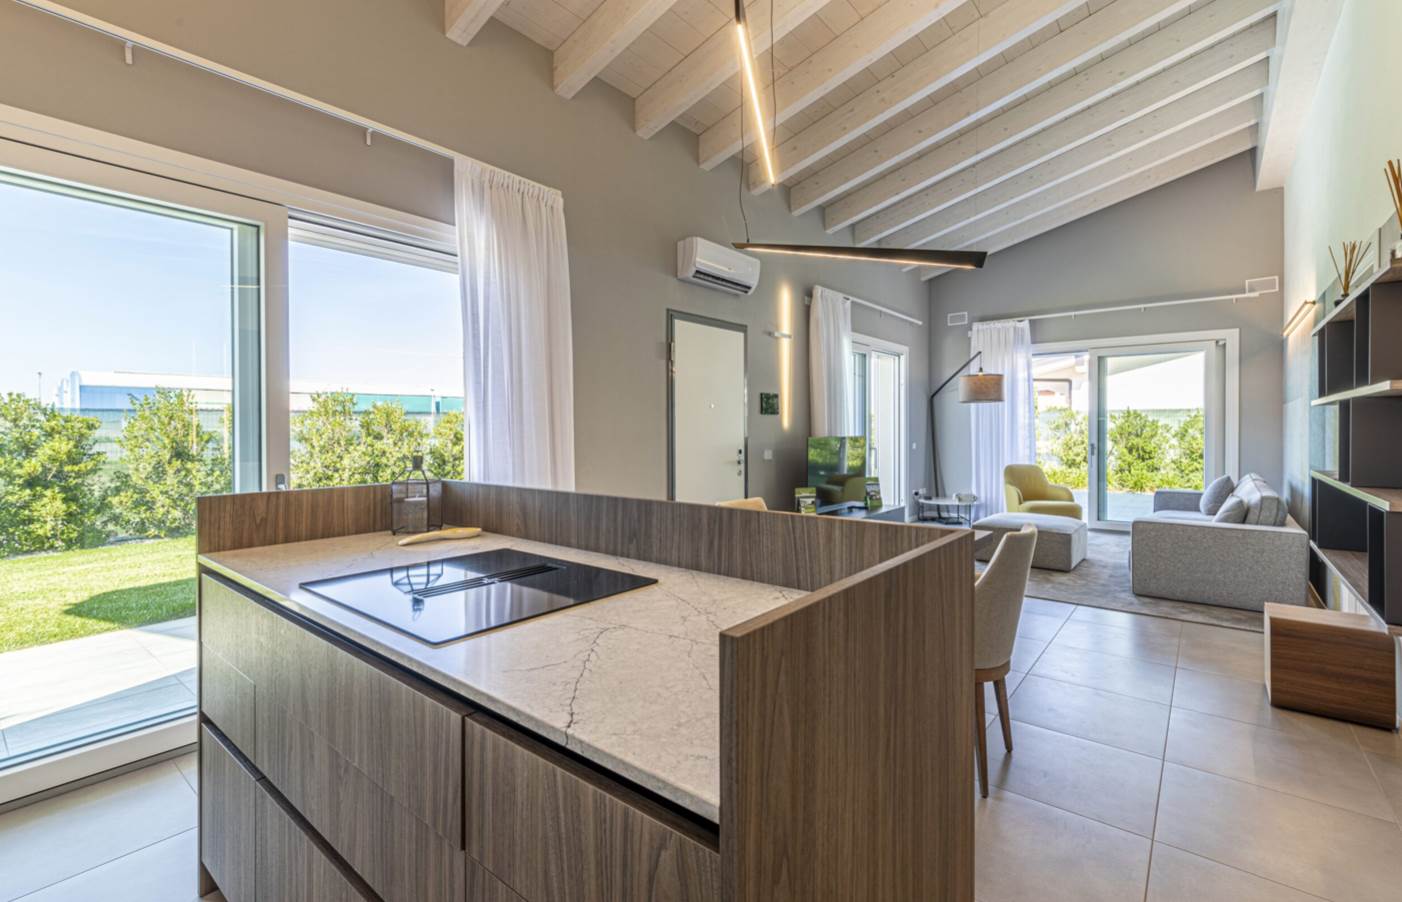 LONATO, Villa zu verkaufen von 100 Qm, Neubau, Energie-klasse: A+, am boden Land, zusammengestellt von: 5 Raume, Separate Küche, , 3 Zimmer, 2 Baeder,